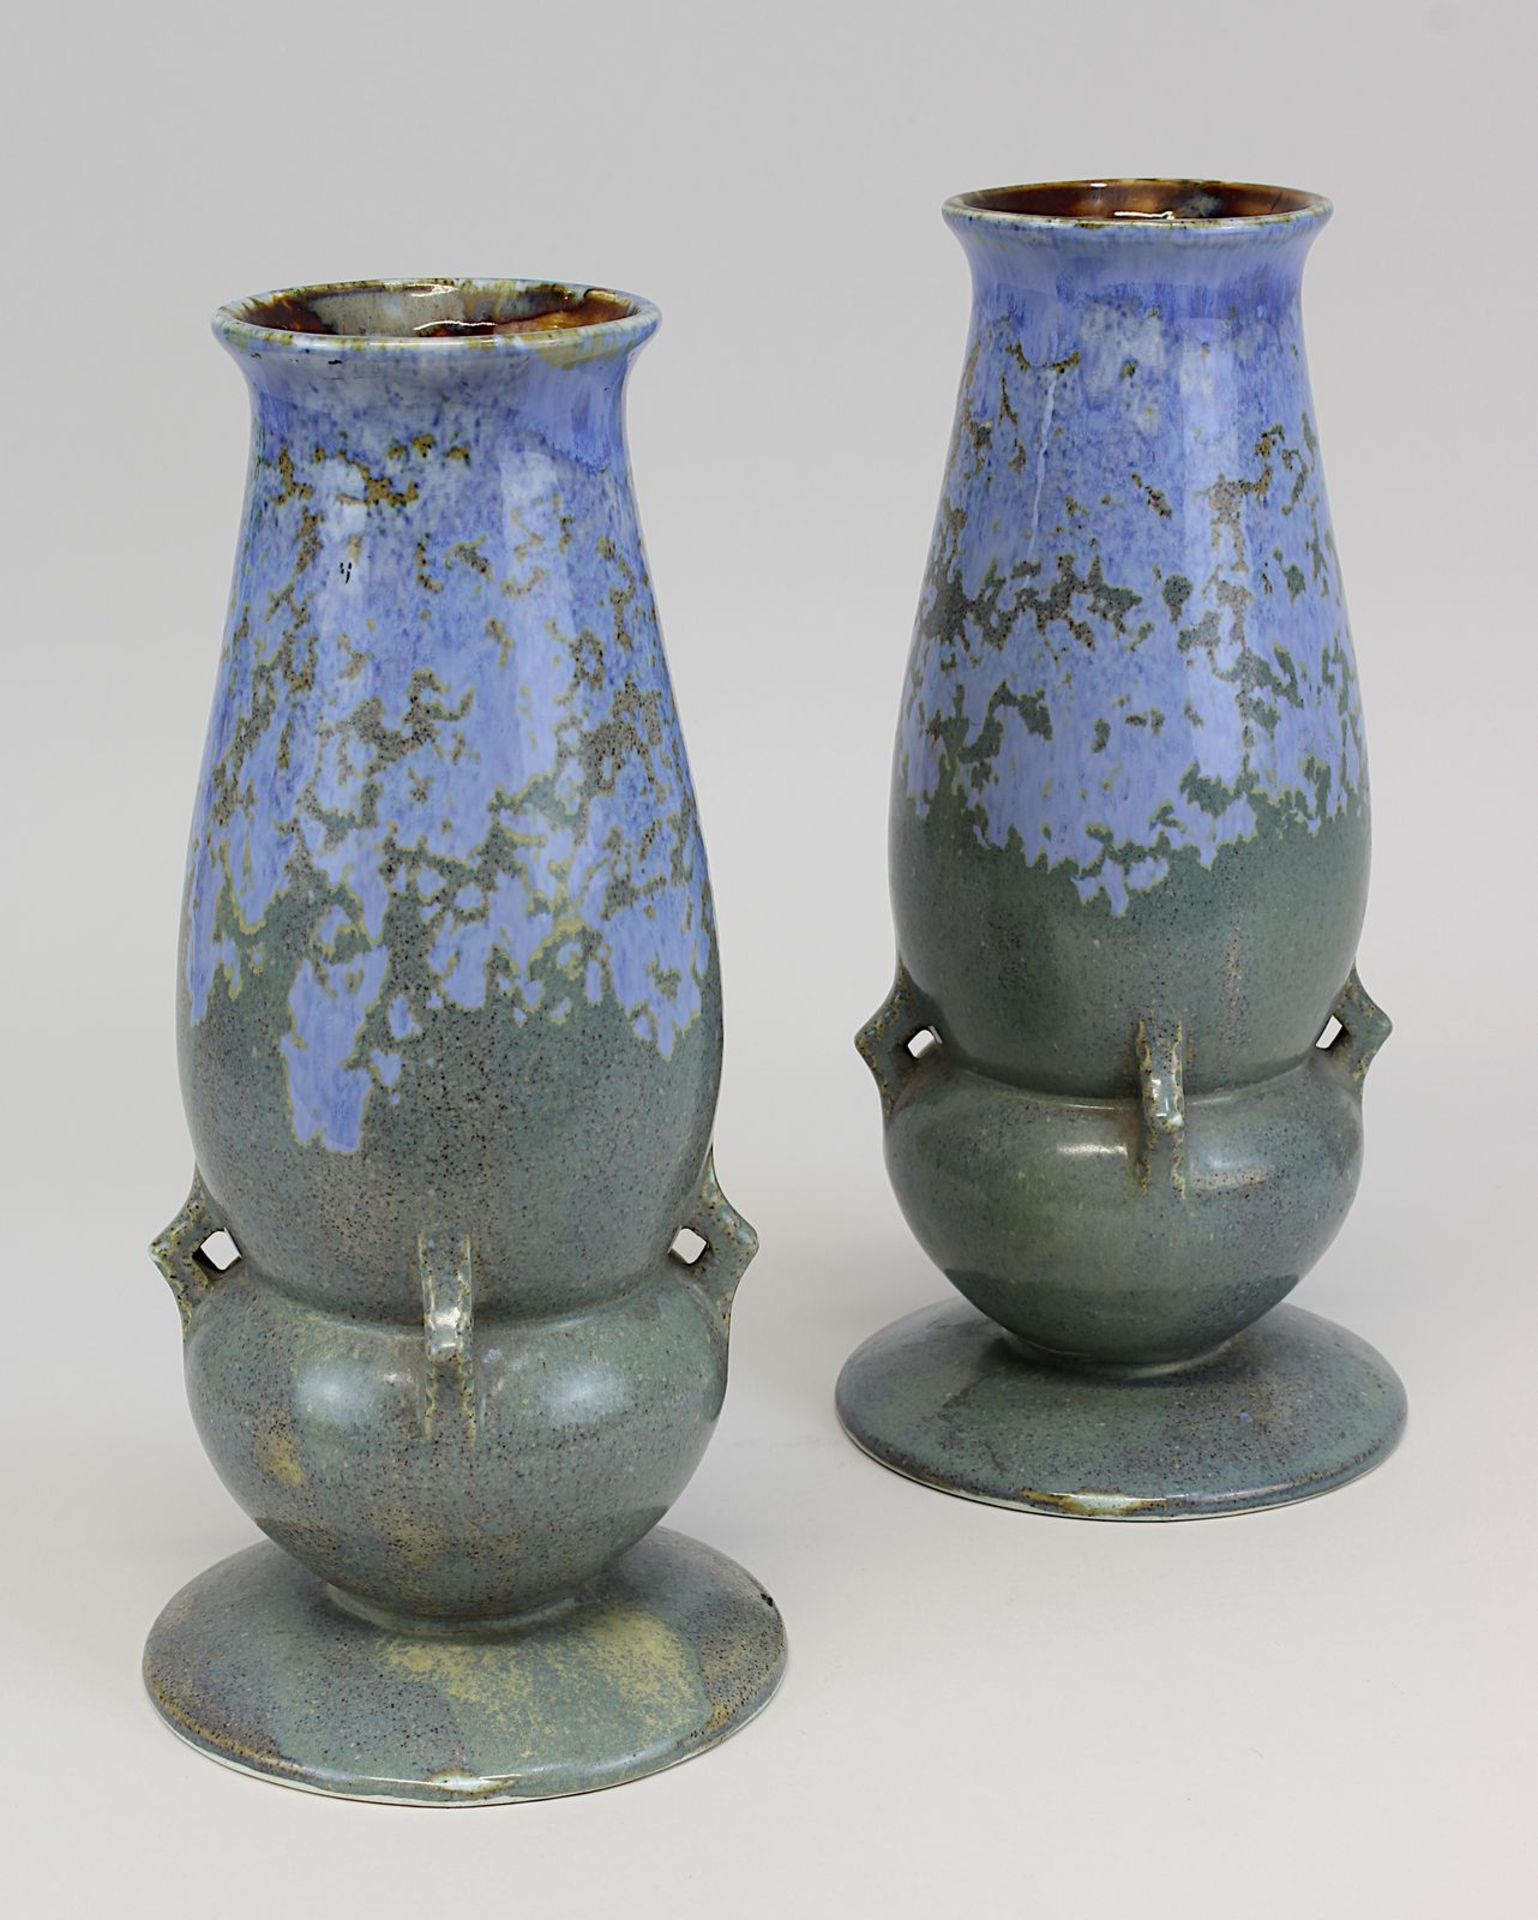 Paar Septfontaines Art-Déco Keramikvasen, um 1920, heller Scherben, Außenwandung mit grün-blauer